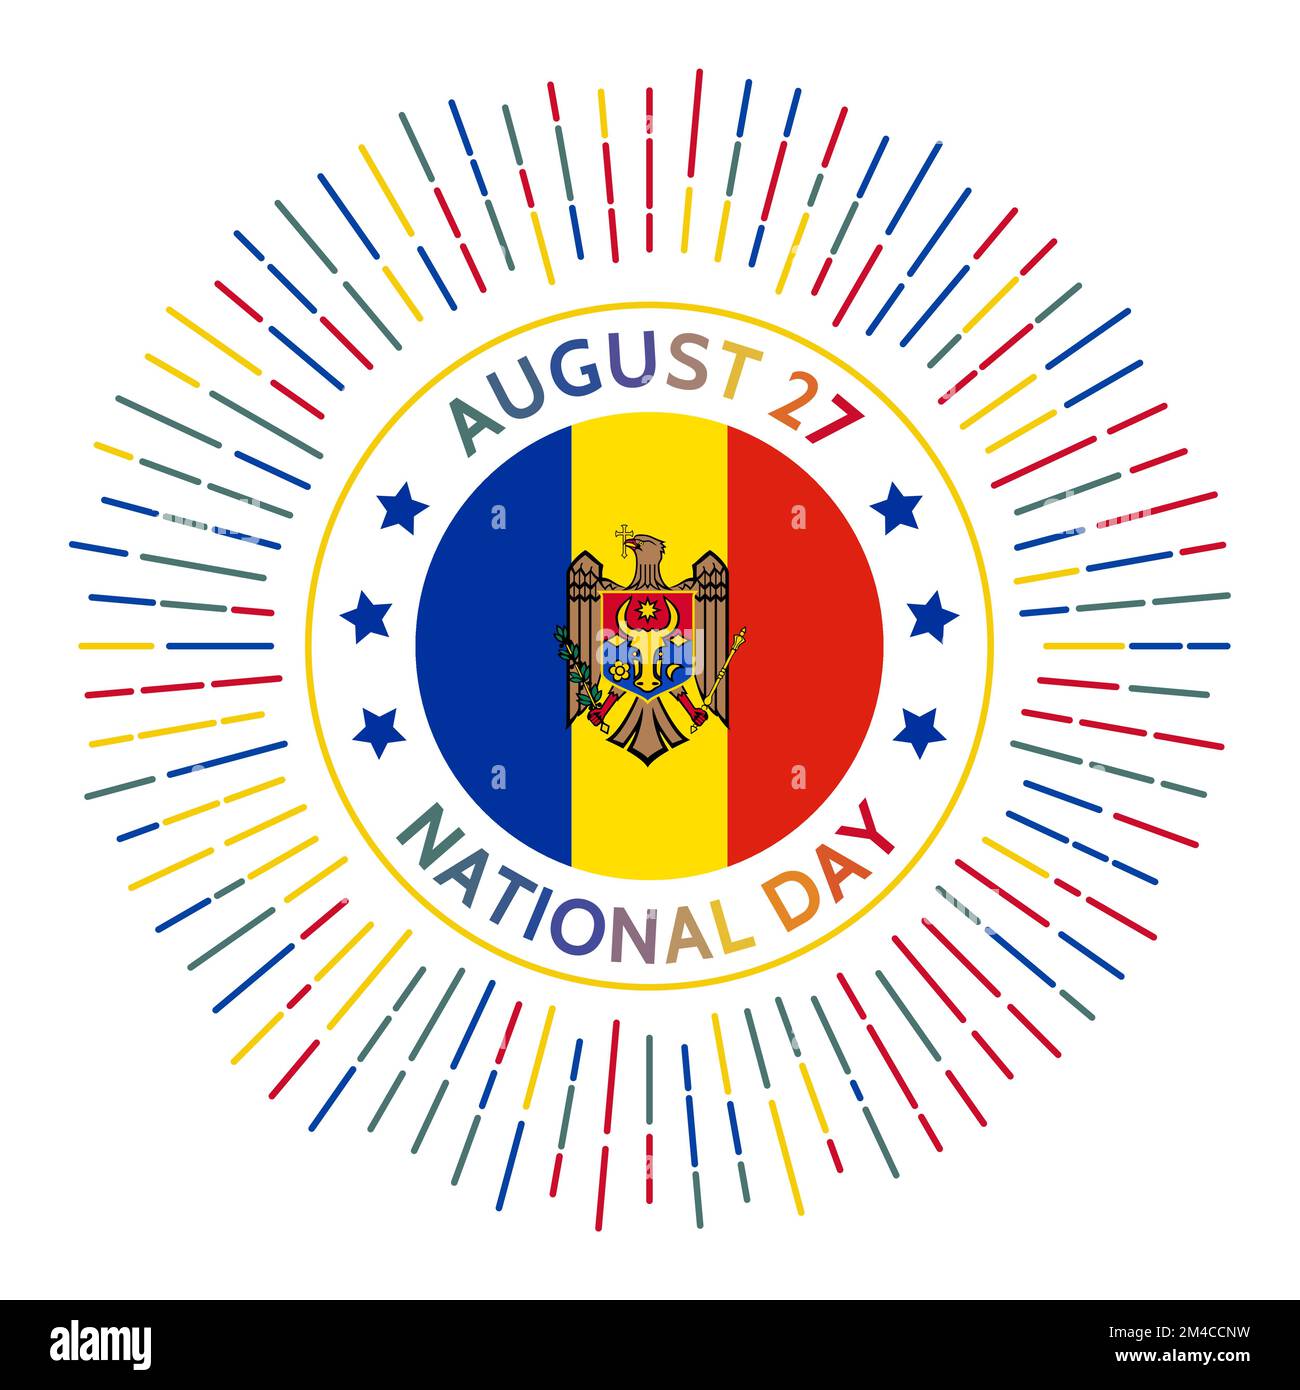 Moldauisches Nationaltagesabzeichen. Unabhängigkeitserklärung der Sowjetunion 1991. Gefeiert am 27. August. Stock Vektor